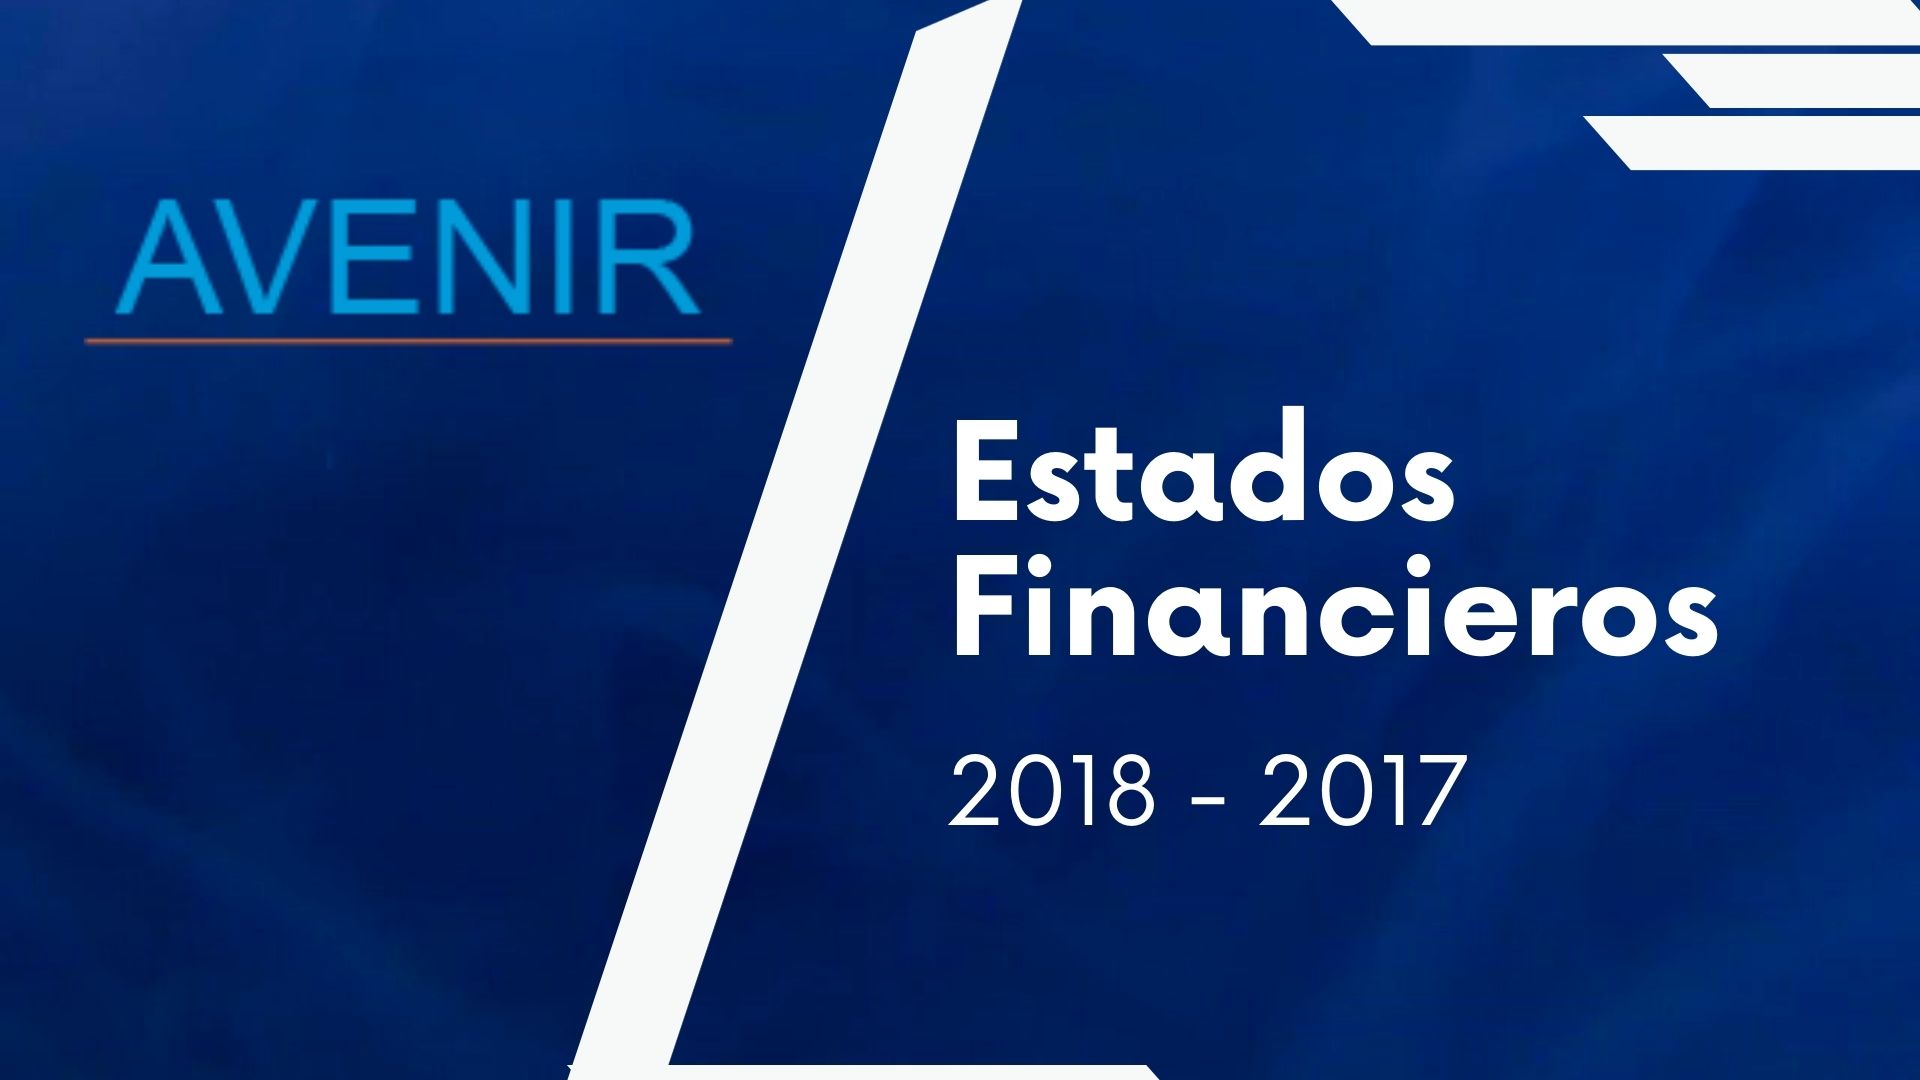 avenir-salud-contenido-estados-financieros-2018-2017